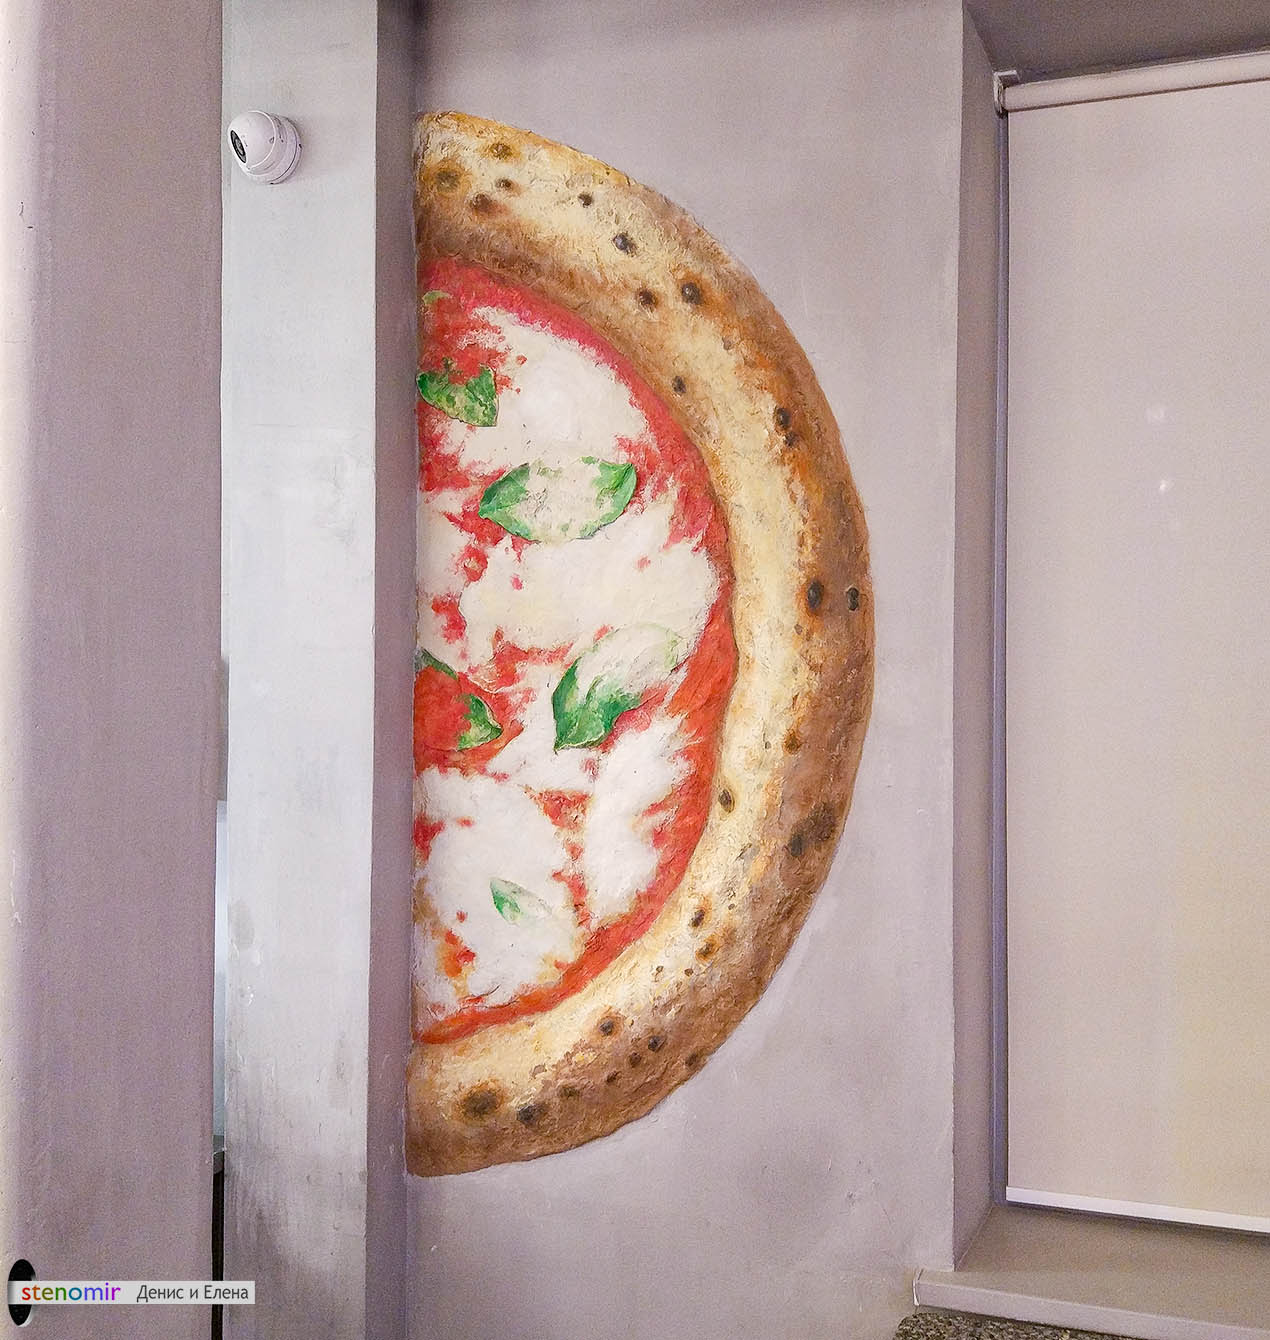 объемная большая пицца на стене кафе сделана в виде барельефа из гипса и расписана акриловыми красками